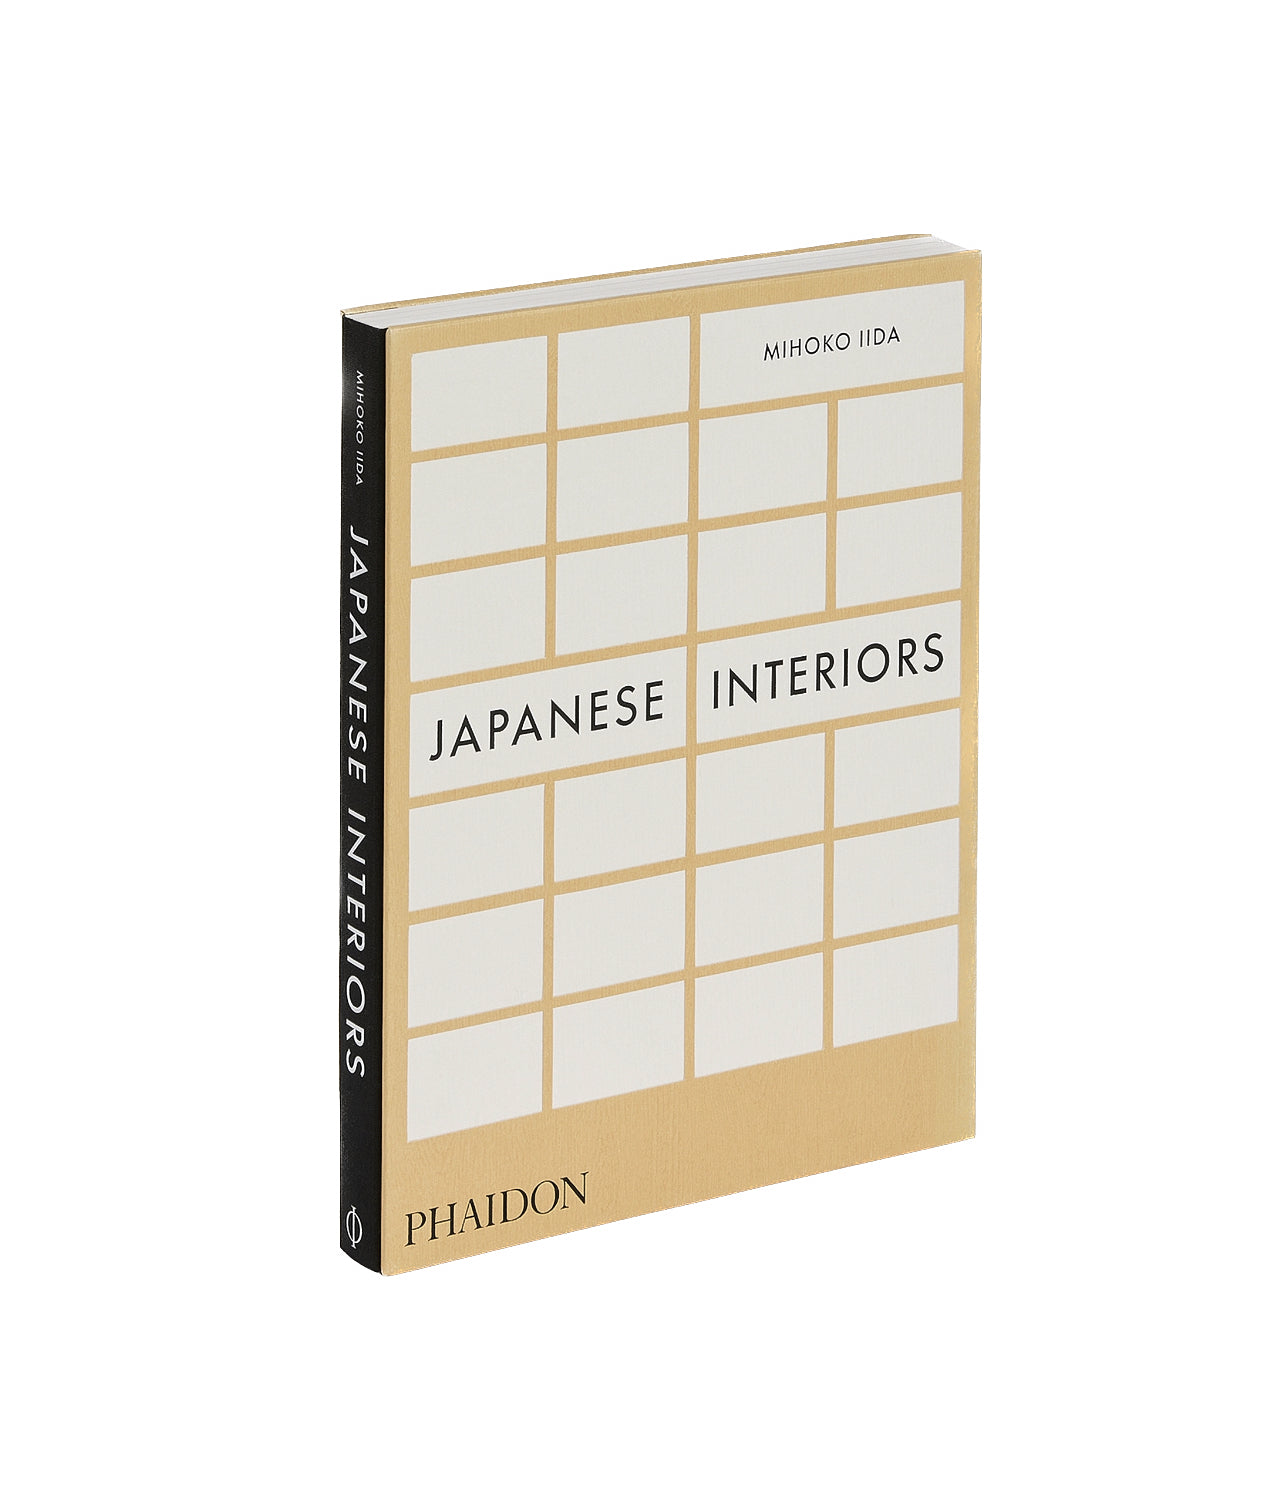 "Japanese Interiors", Mihoko Iida